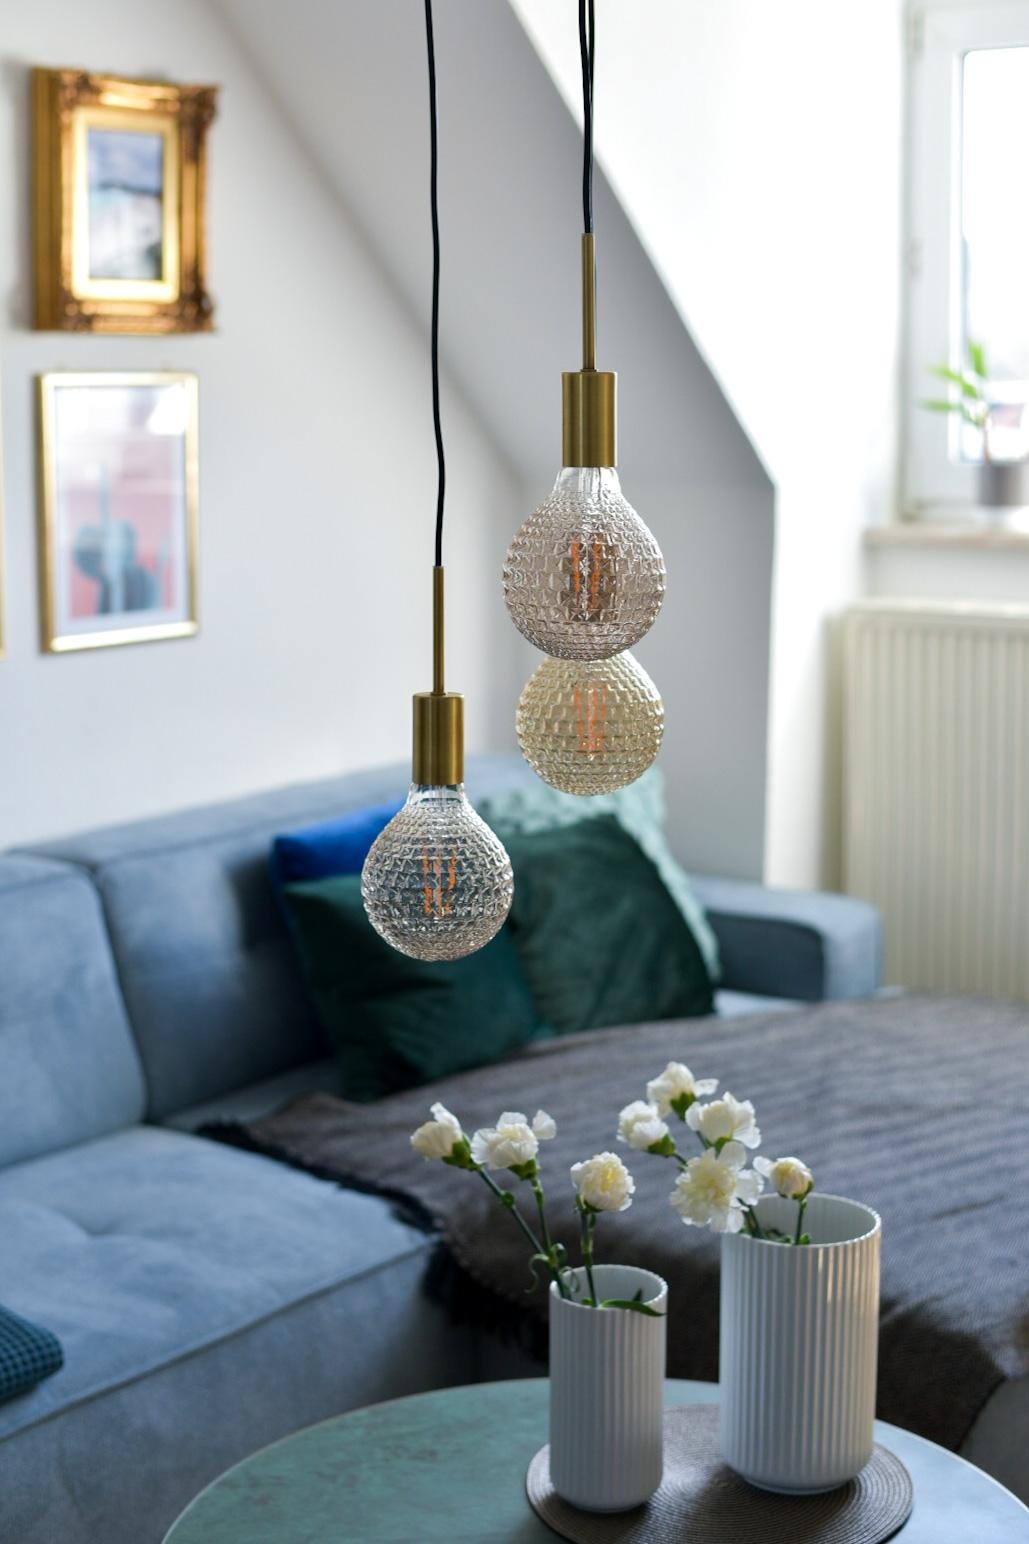 Das Wohnzimmer ist nun so gut wie fertig 🥰 #nordlux Lampe, #livinsplit Sofa in Blaugrau, #lyngby Vasen, home24 Glastisch